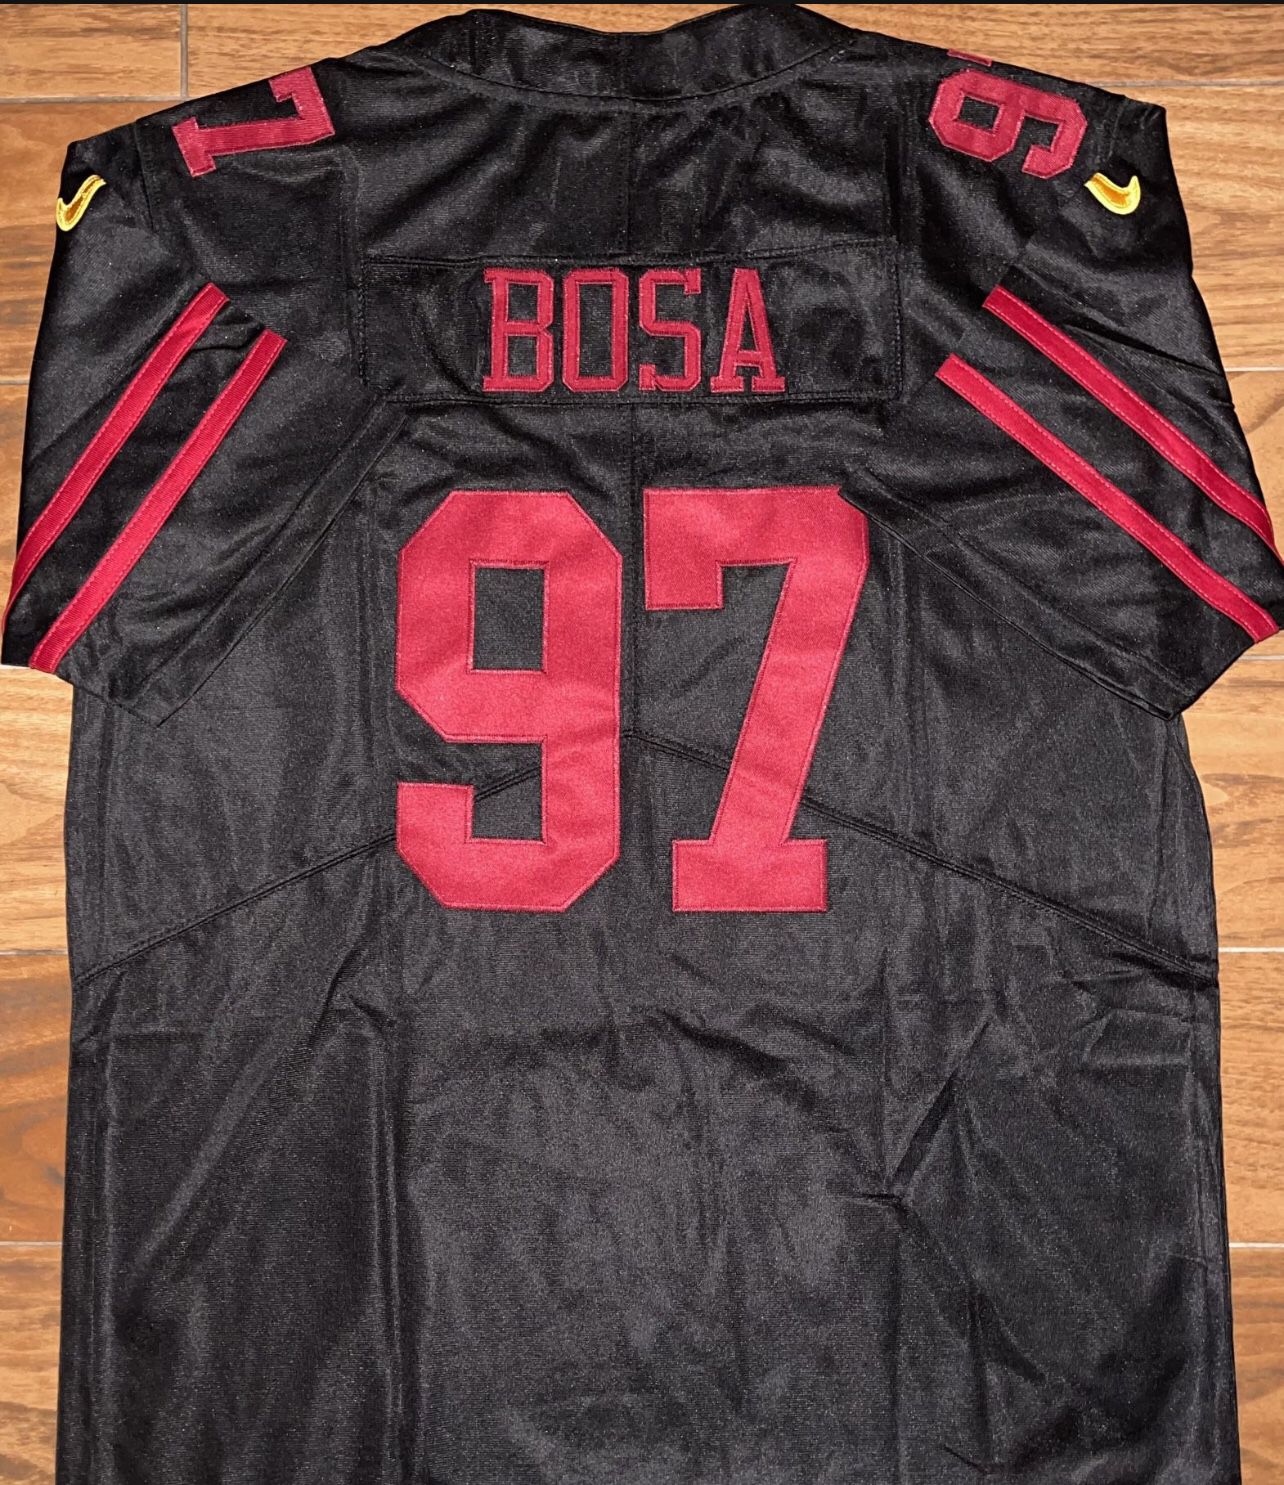 bosa stitched jersey